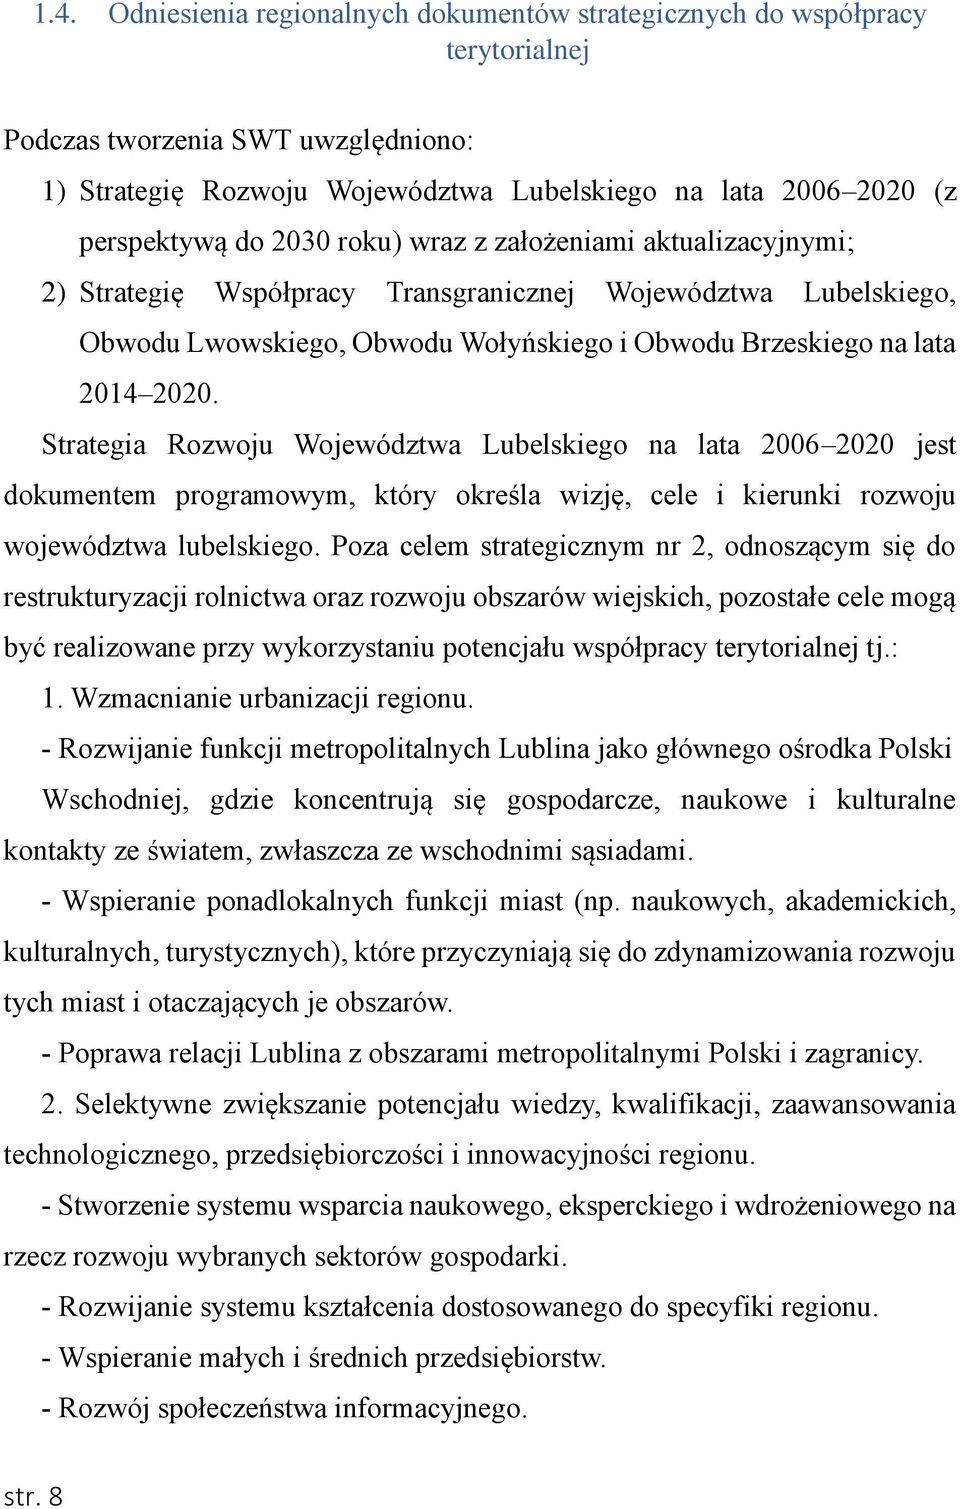 Strategia Rozwoju Województwa Lubelskiego na lata 2006 2020 jest dokumentem programowym, który określa wizję, cele i kierunki rozwoju województwa lubelskiego.